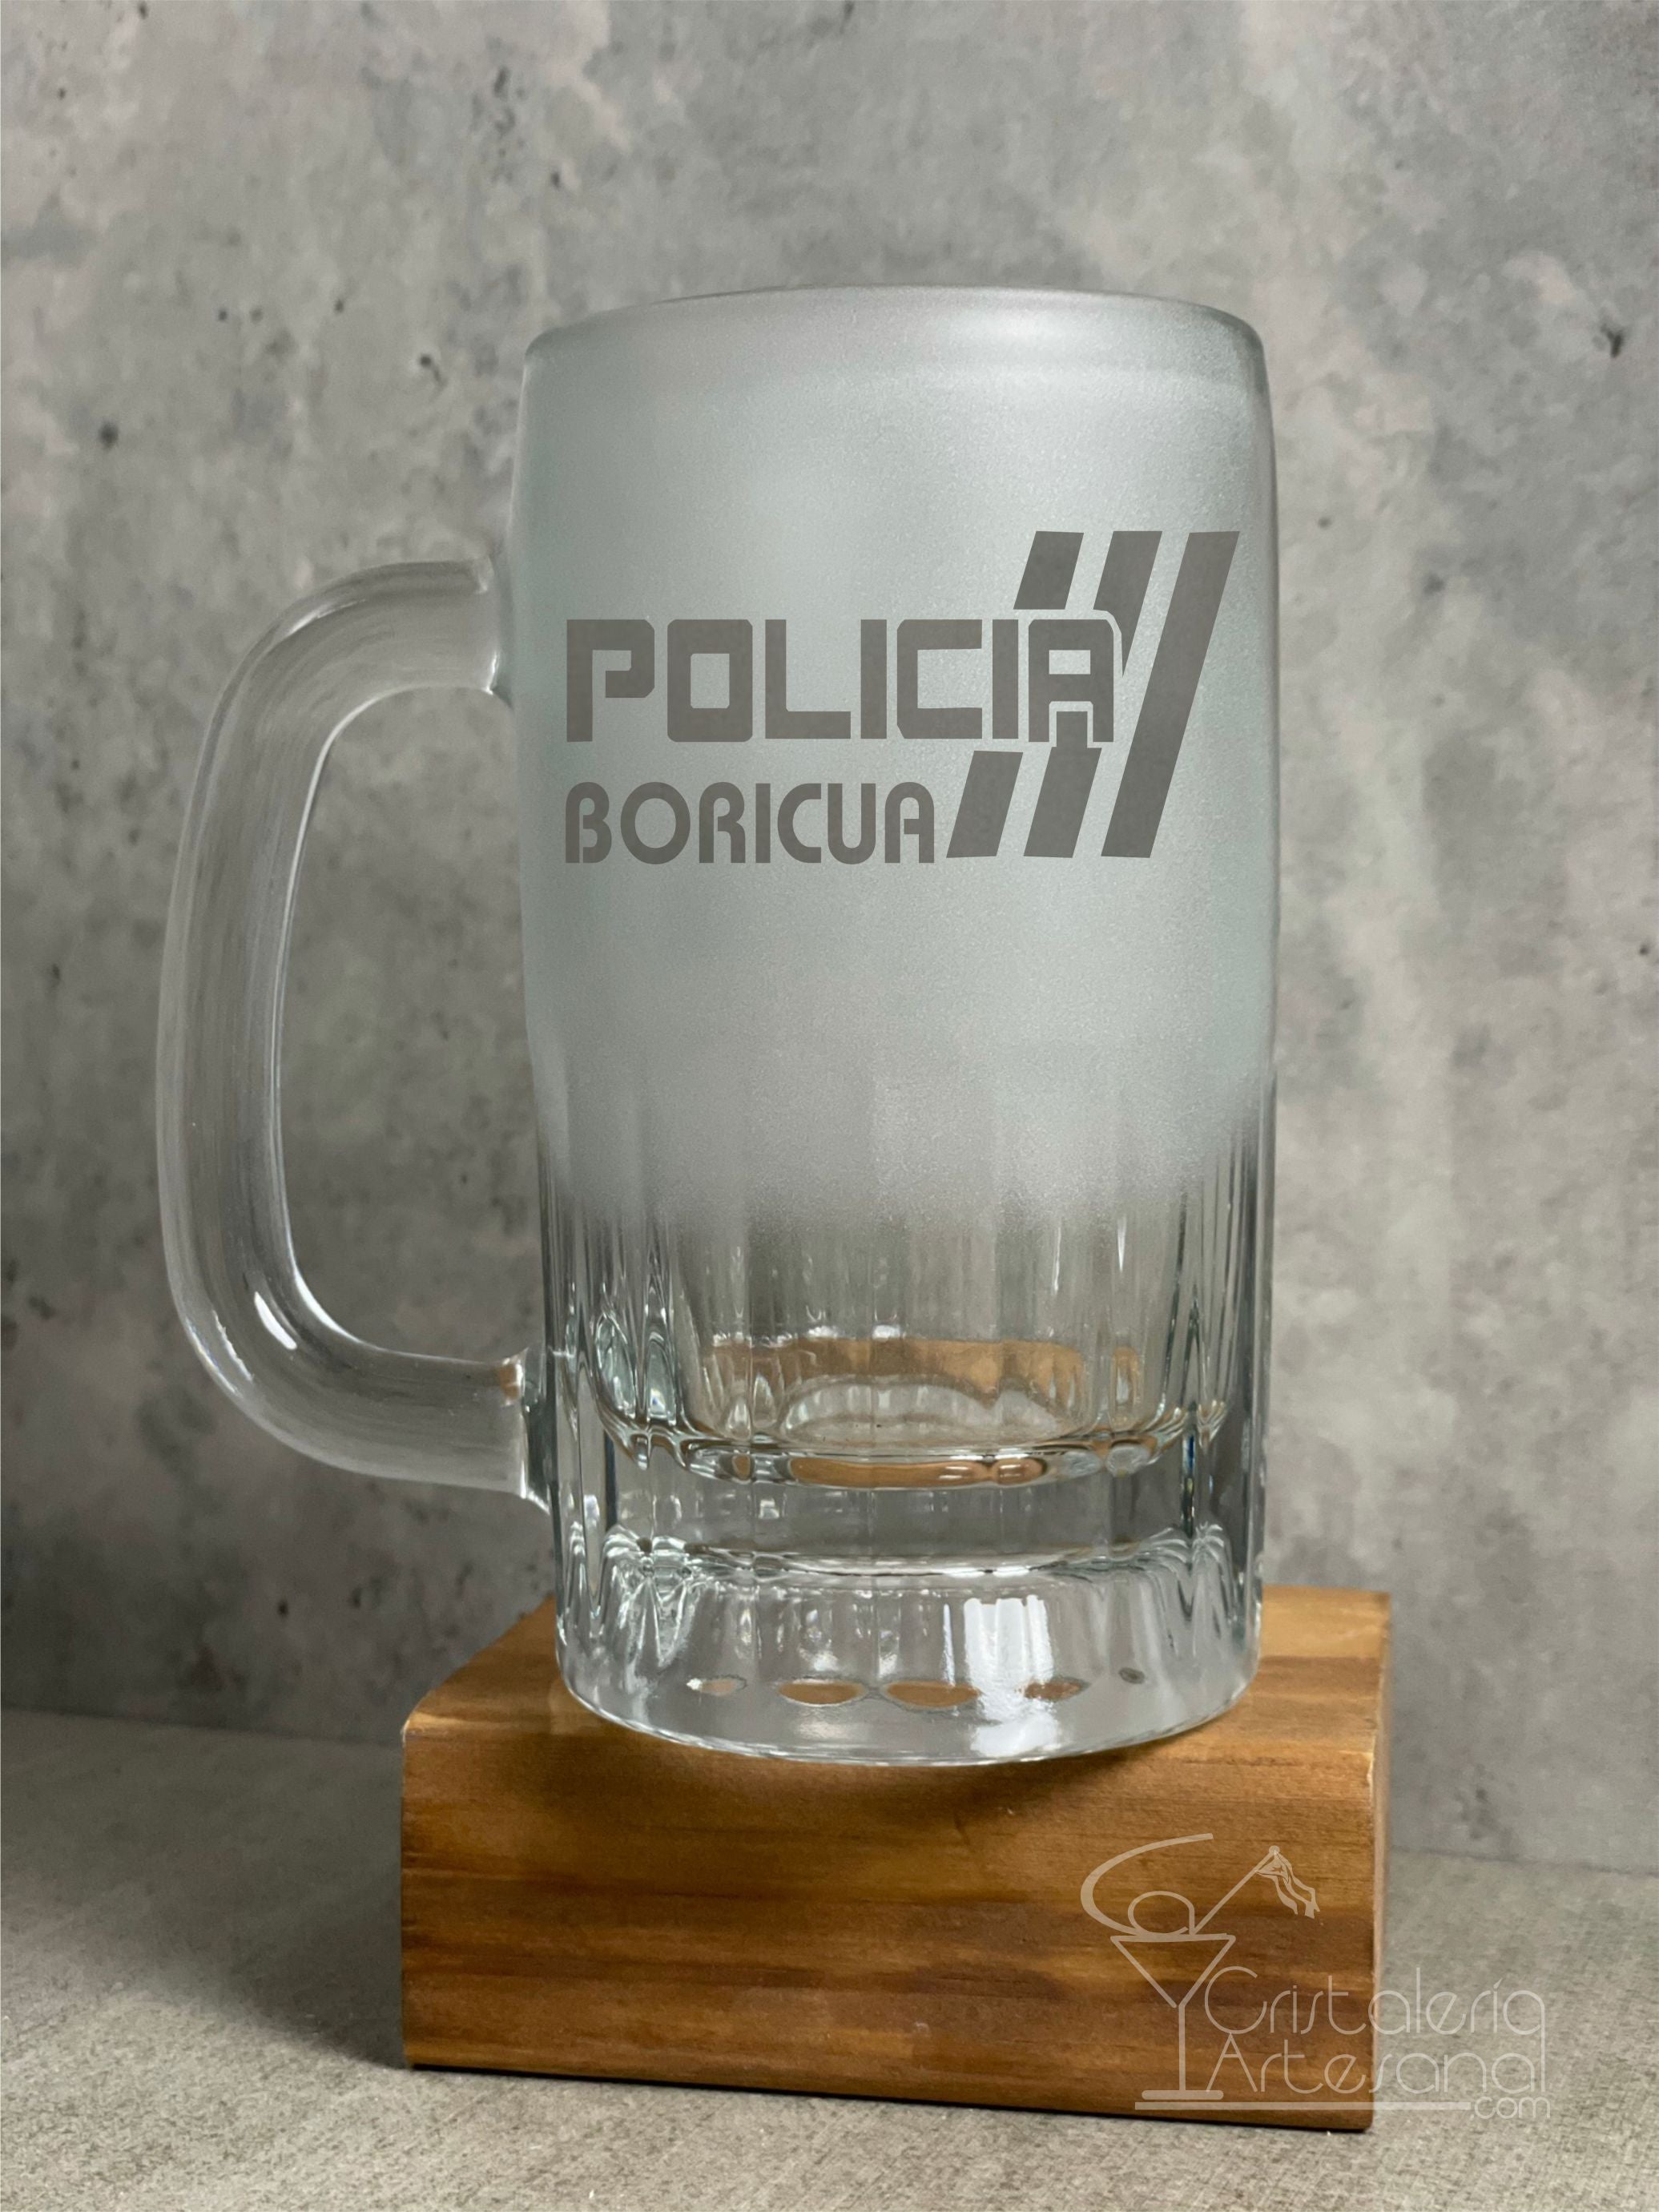 POLICIA BORICUA BEER MUG